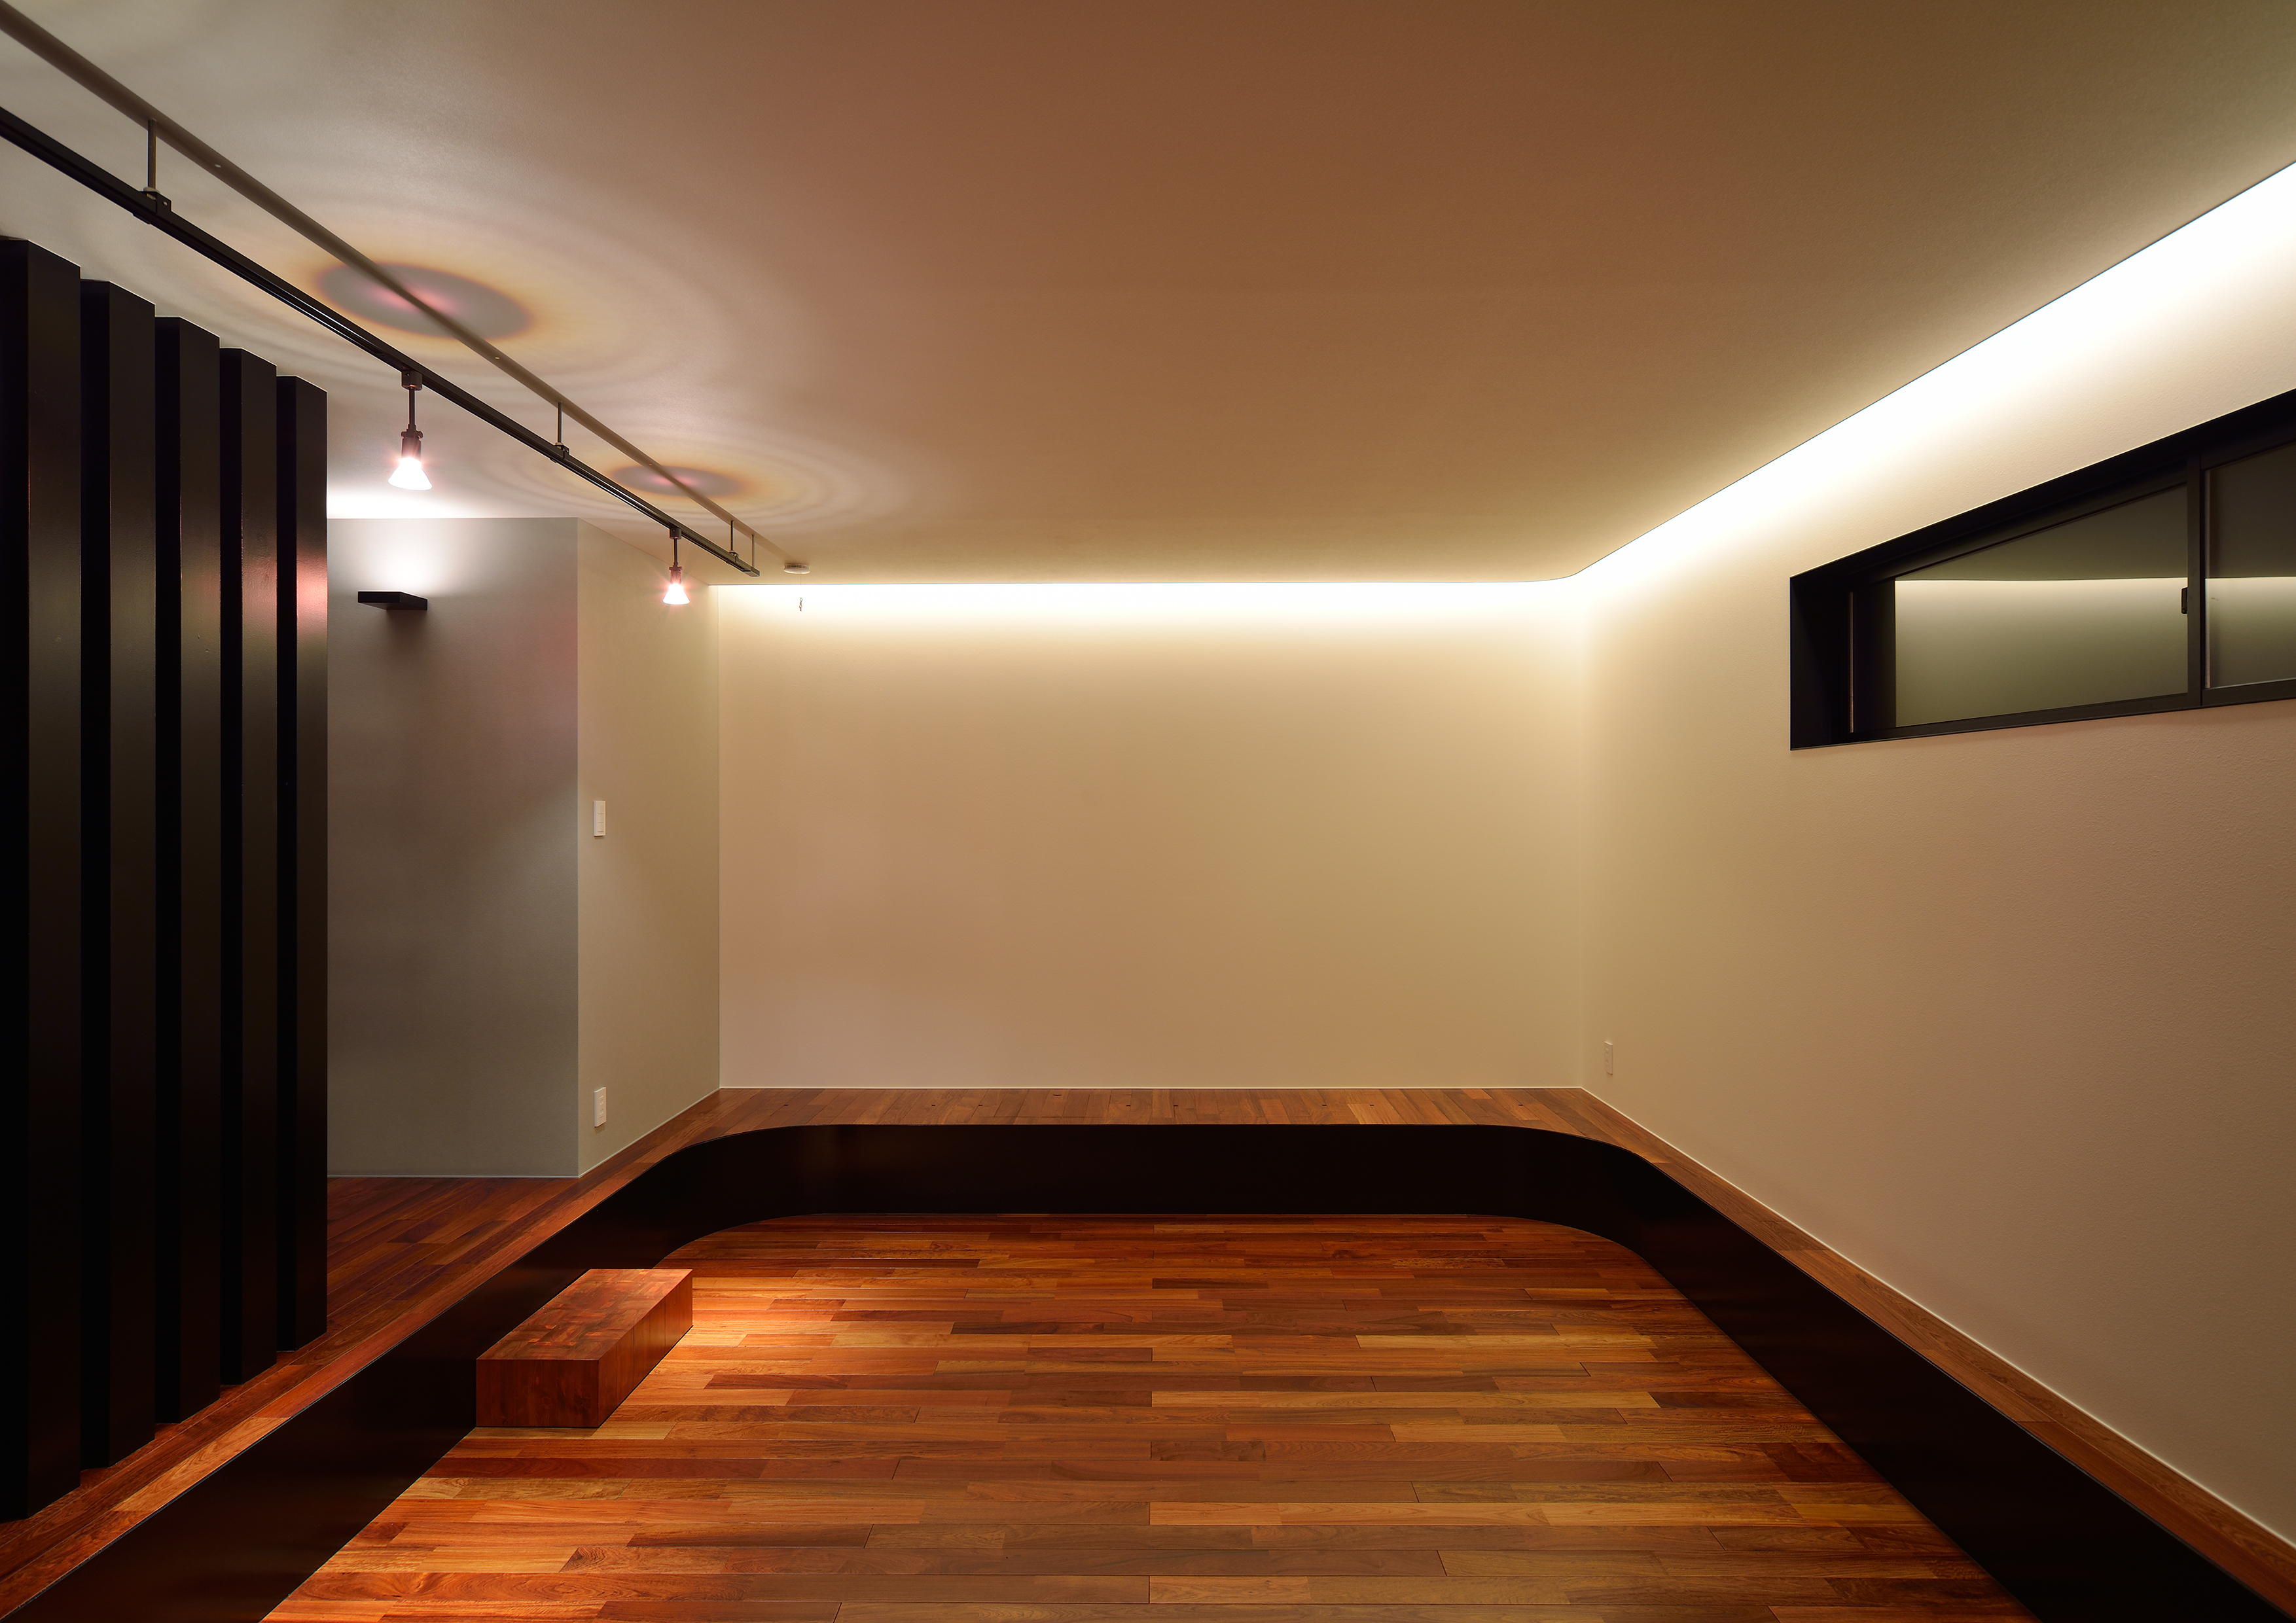 間接照明と天井壁からの照明がムード漂うマルチルーム